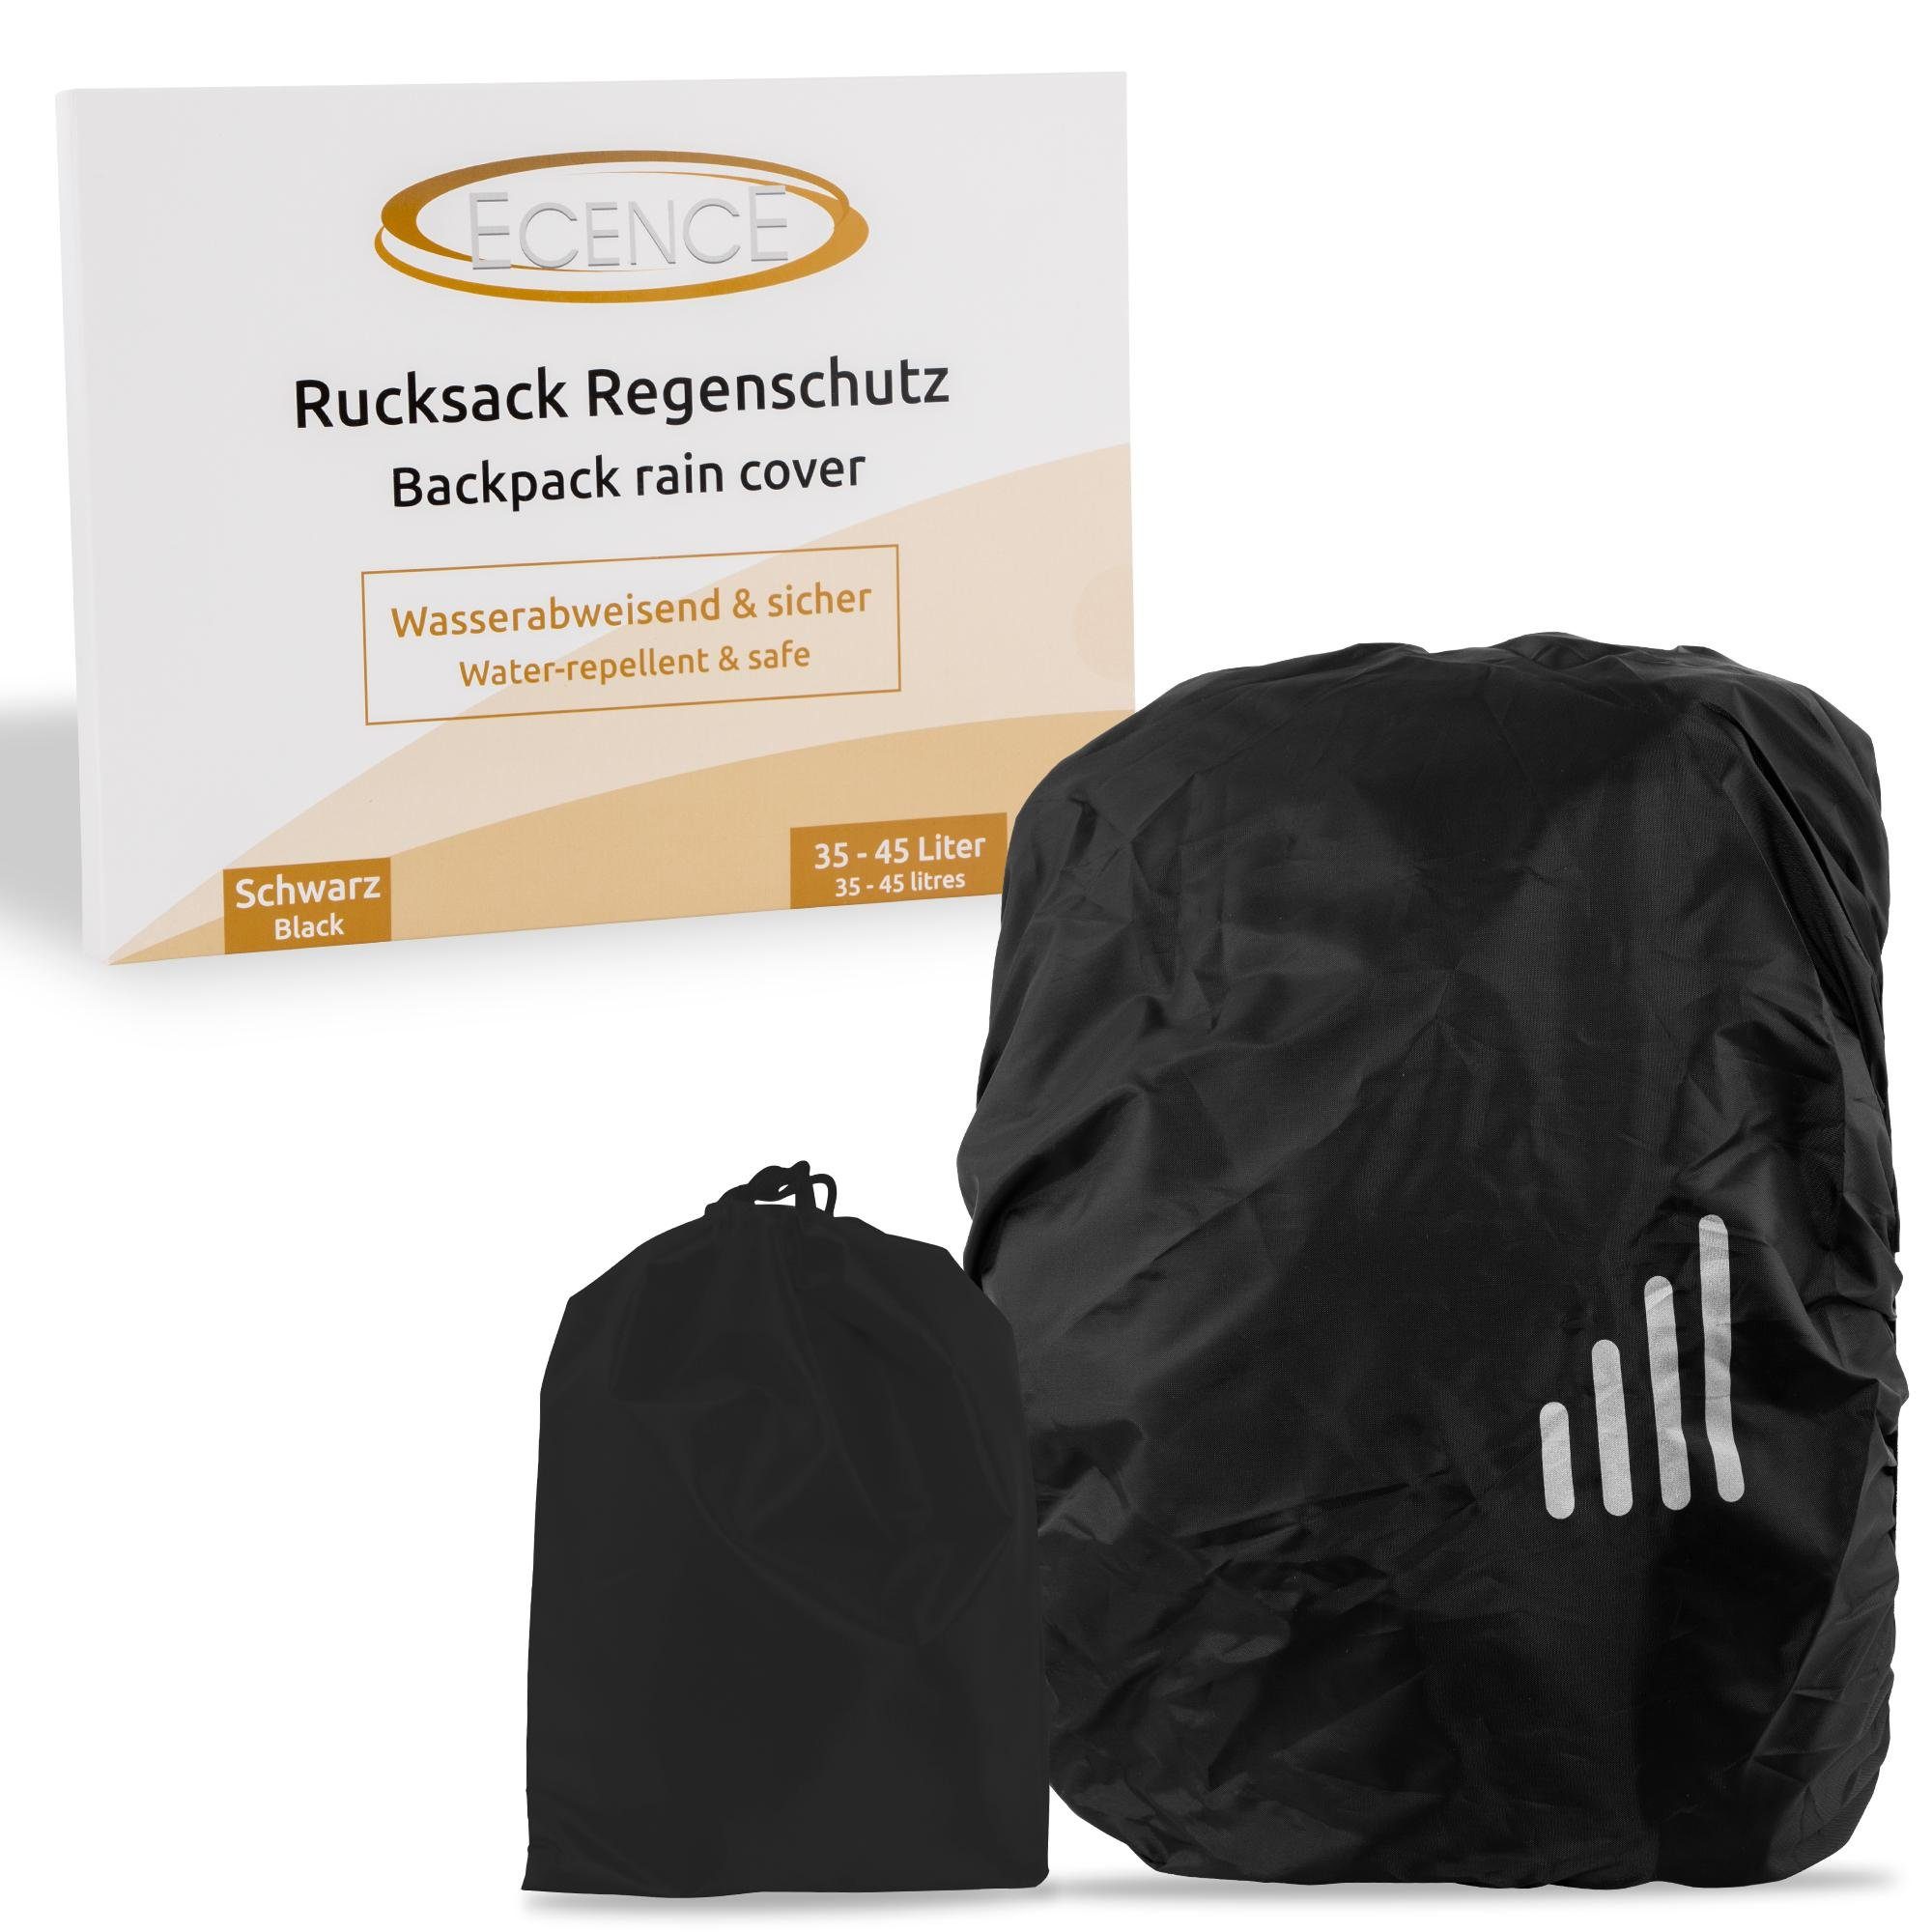 ECENCE Rucksack-Regenschutz 1x Regenschutz Rucksack 35-45L mit Schwarz